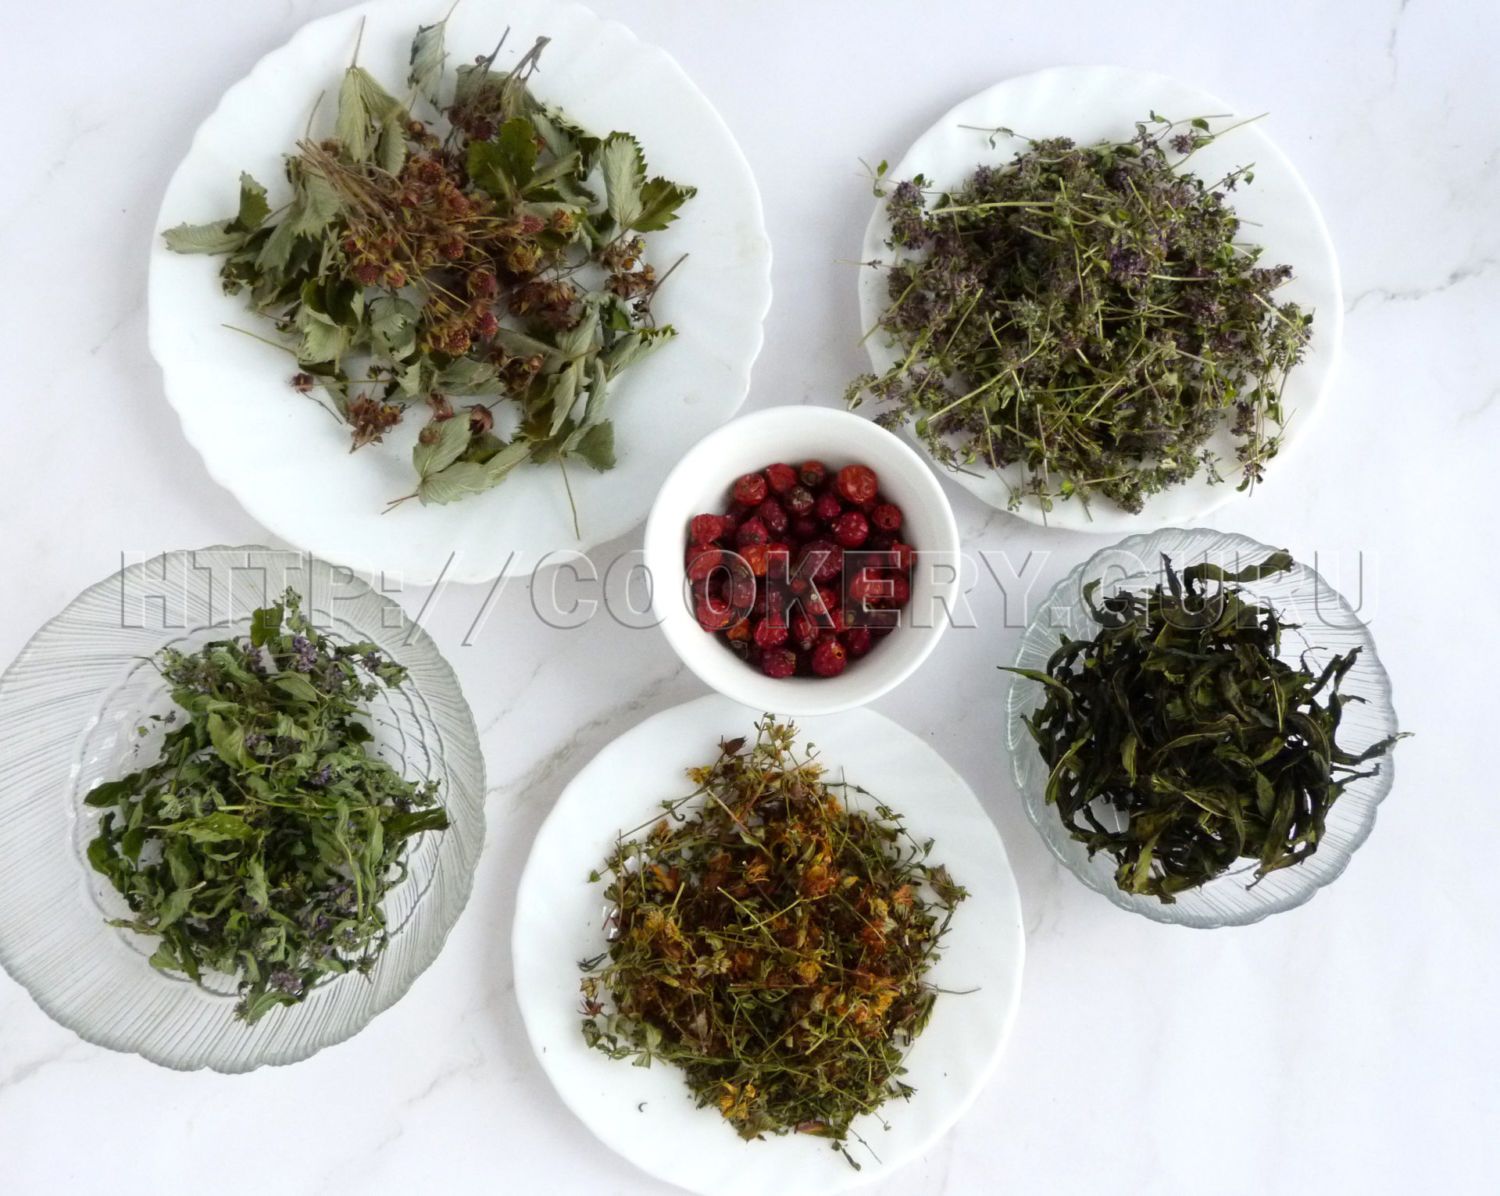 травяной чай, фиточай, травы для чая, травы вместо чая, какие травы вместо чая, пить травы вместо чая, какие травы пить вместо чая, какие травы можно пить вместо чая, травяной напиток, какая трава для чая, какие травы можно для чая, рецепты травяных чаев, чай травяной сбор, какие травы смешивать для чая, какие травы можно смешивать для чая, чайный напиток травяной, польза травяных чаев, вкусный травяной чай, полезные травы для чая, как заваривать травяной чай, травы для заваривания чая, трава собранная для чая, чай из трав своими руками, травяной чай своими руками рецепты, сочетание трав для чая, какие травы собирают для чая, собрать чай из трав самому